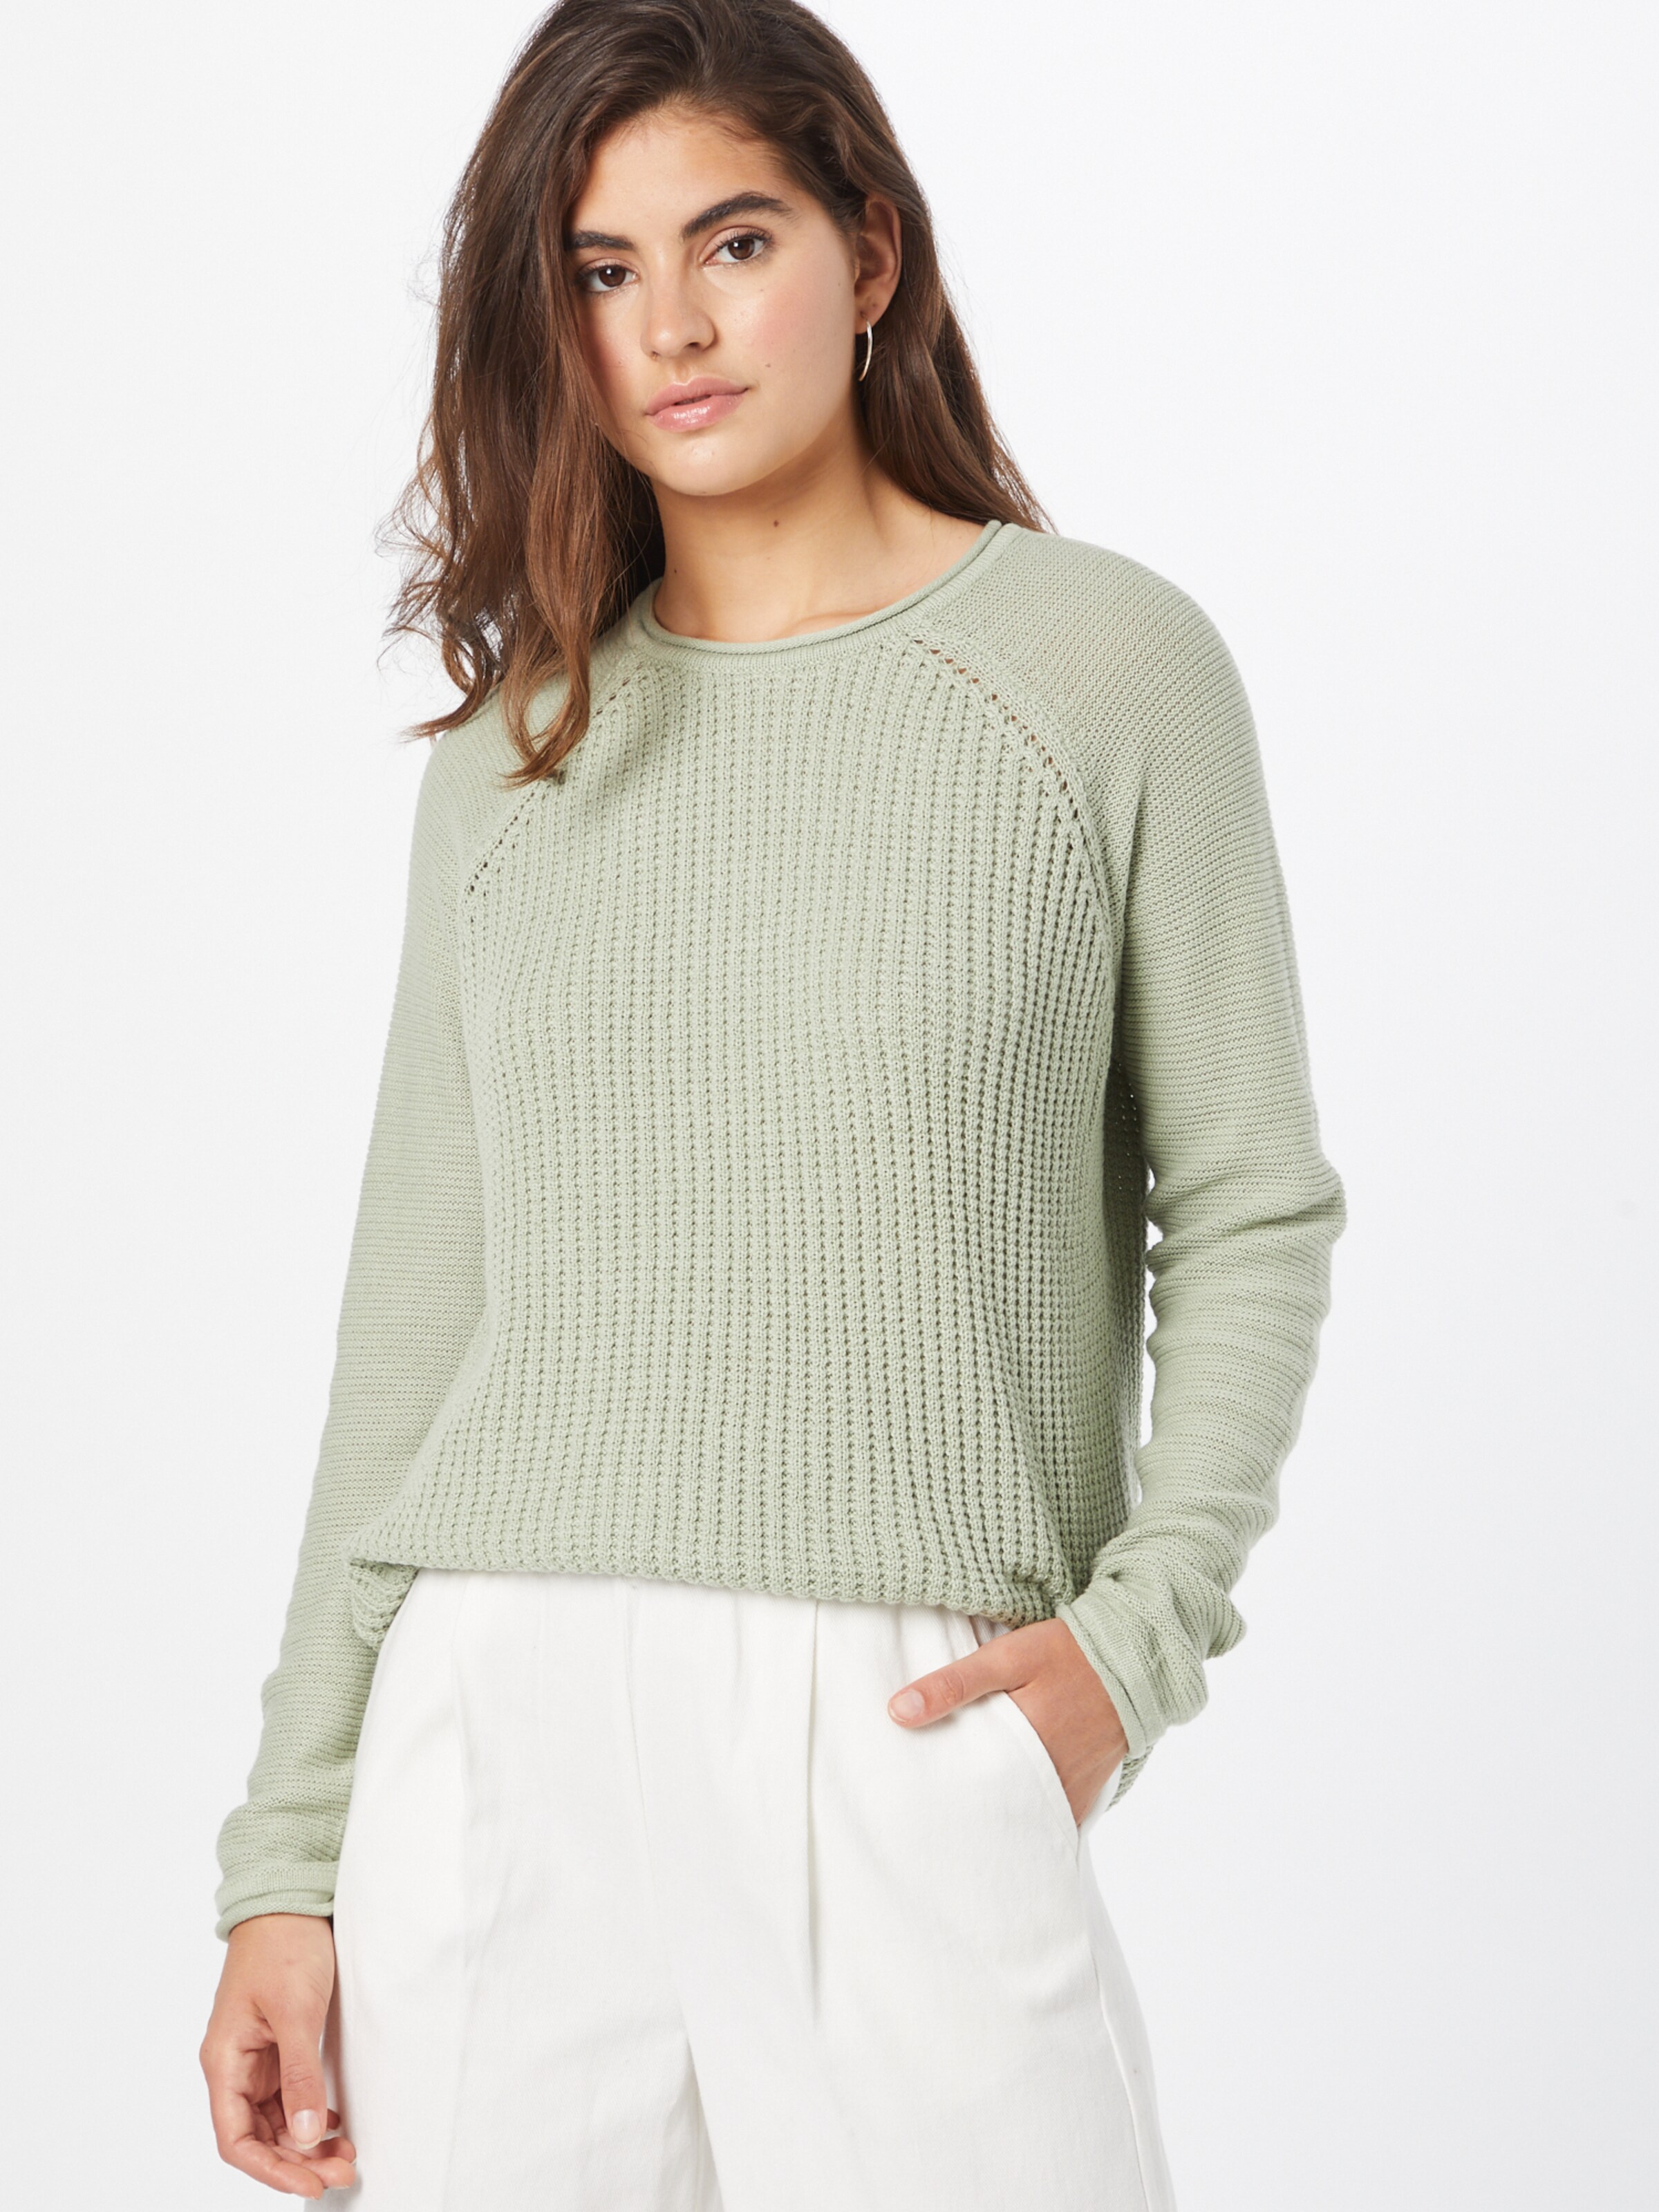 Ekouaer Pullover Sweaters for Women Long Sleeve Side Split Hi-Low Sweater Tops 